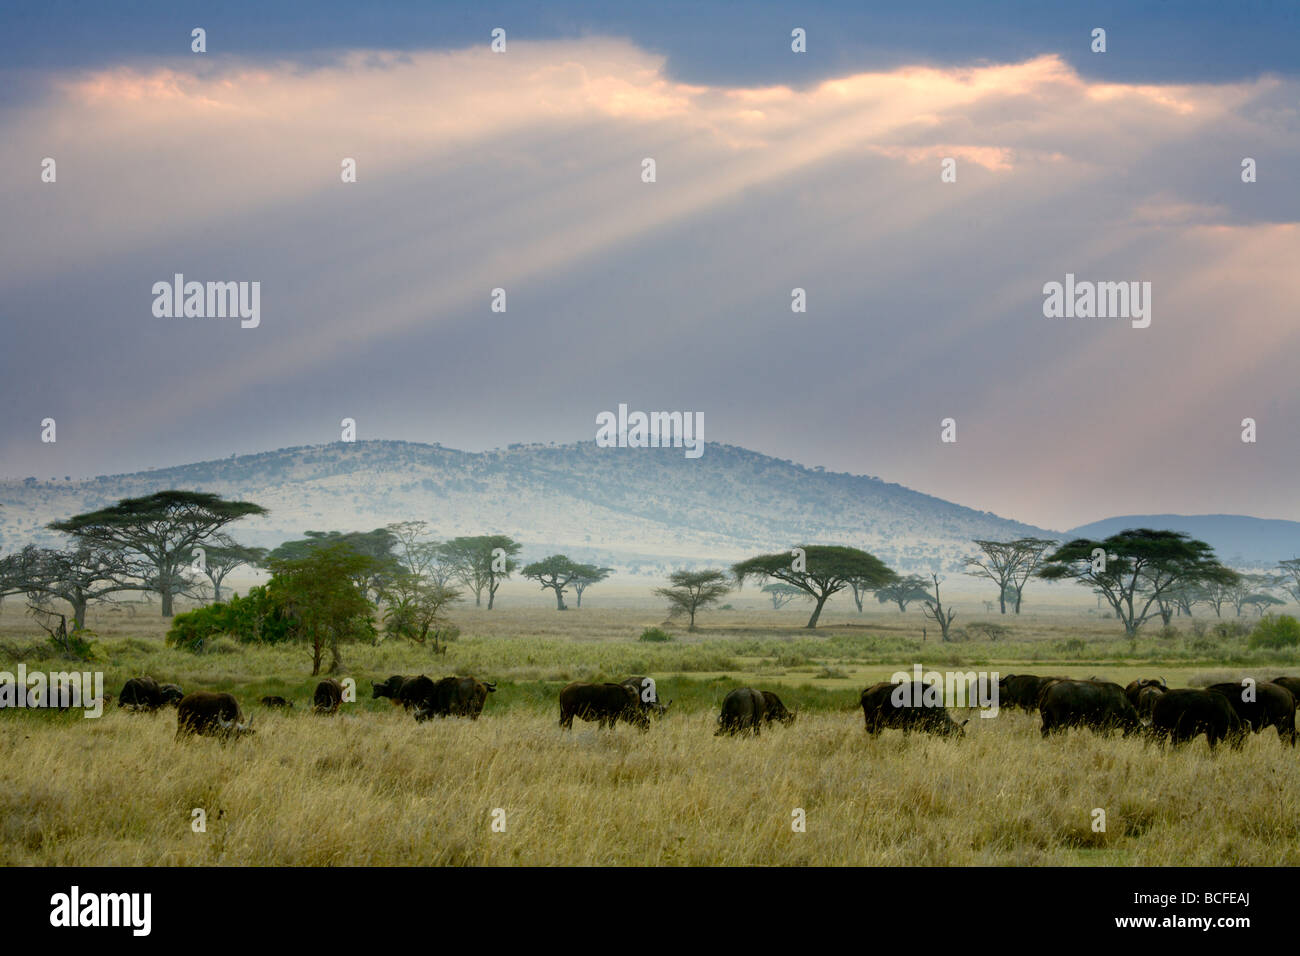 El búfalo africano, el Parque nacional Serengeti, Tanzania Foto de stock